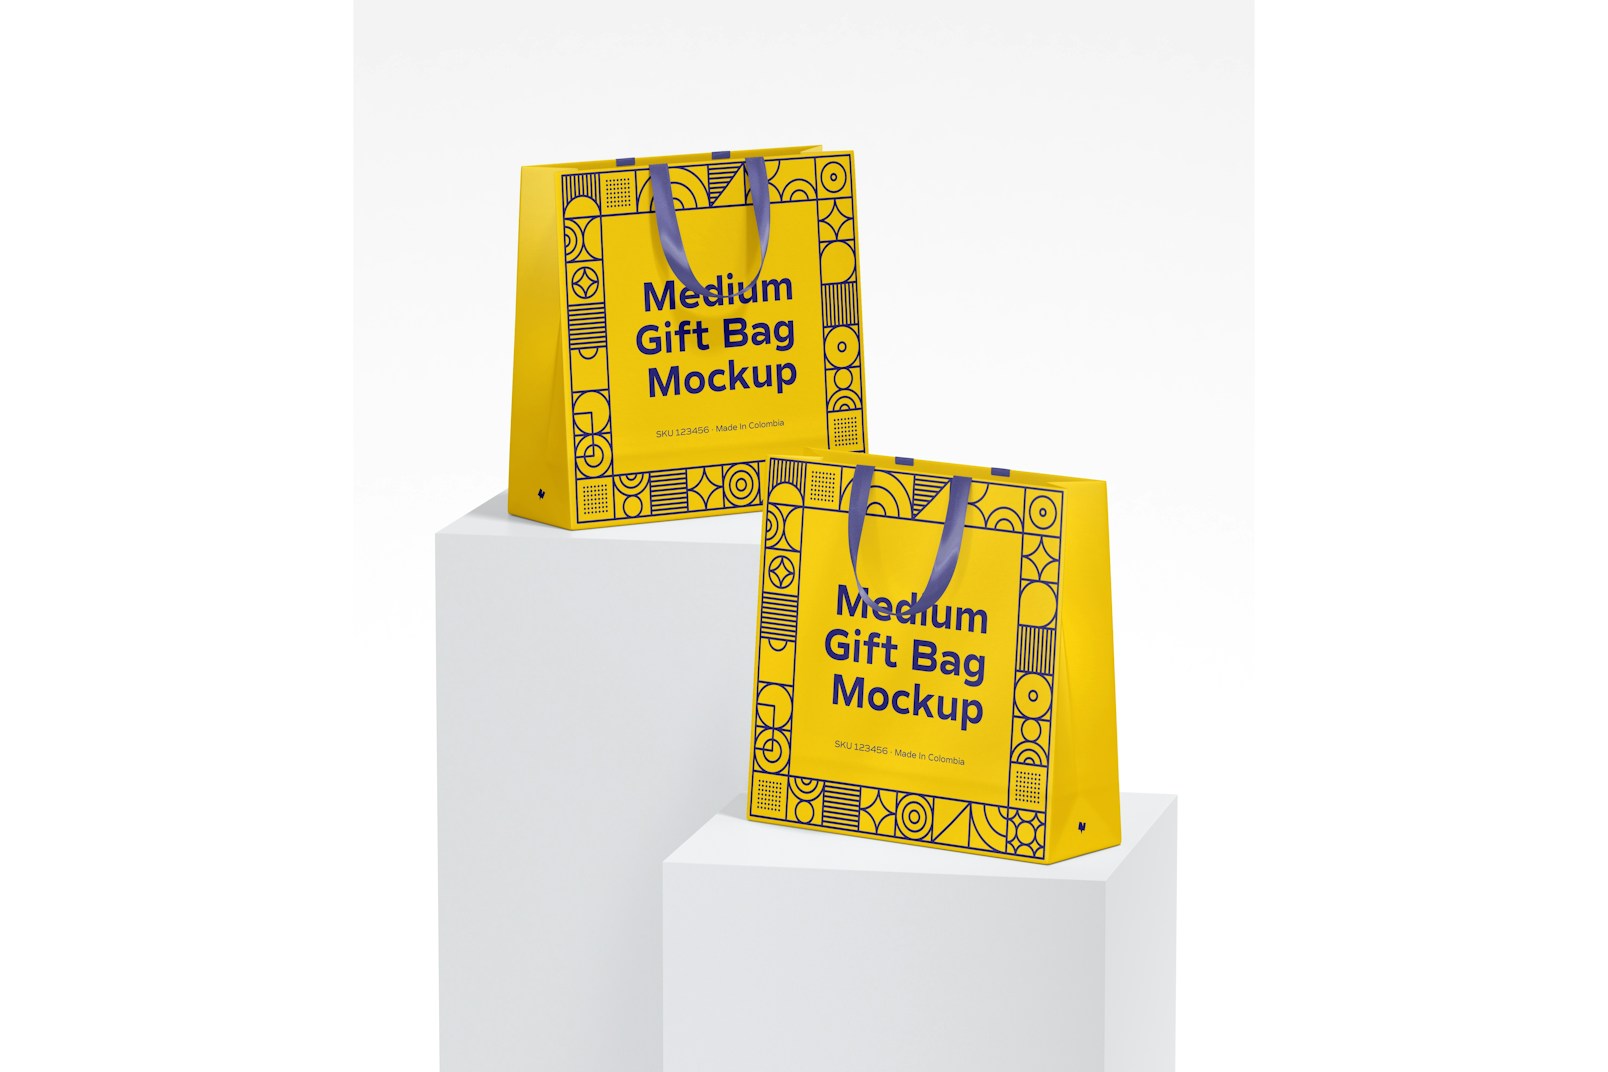 Medium Gift Bags with Ribbon Handle Mockup